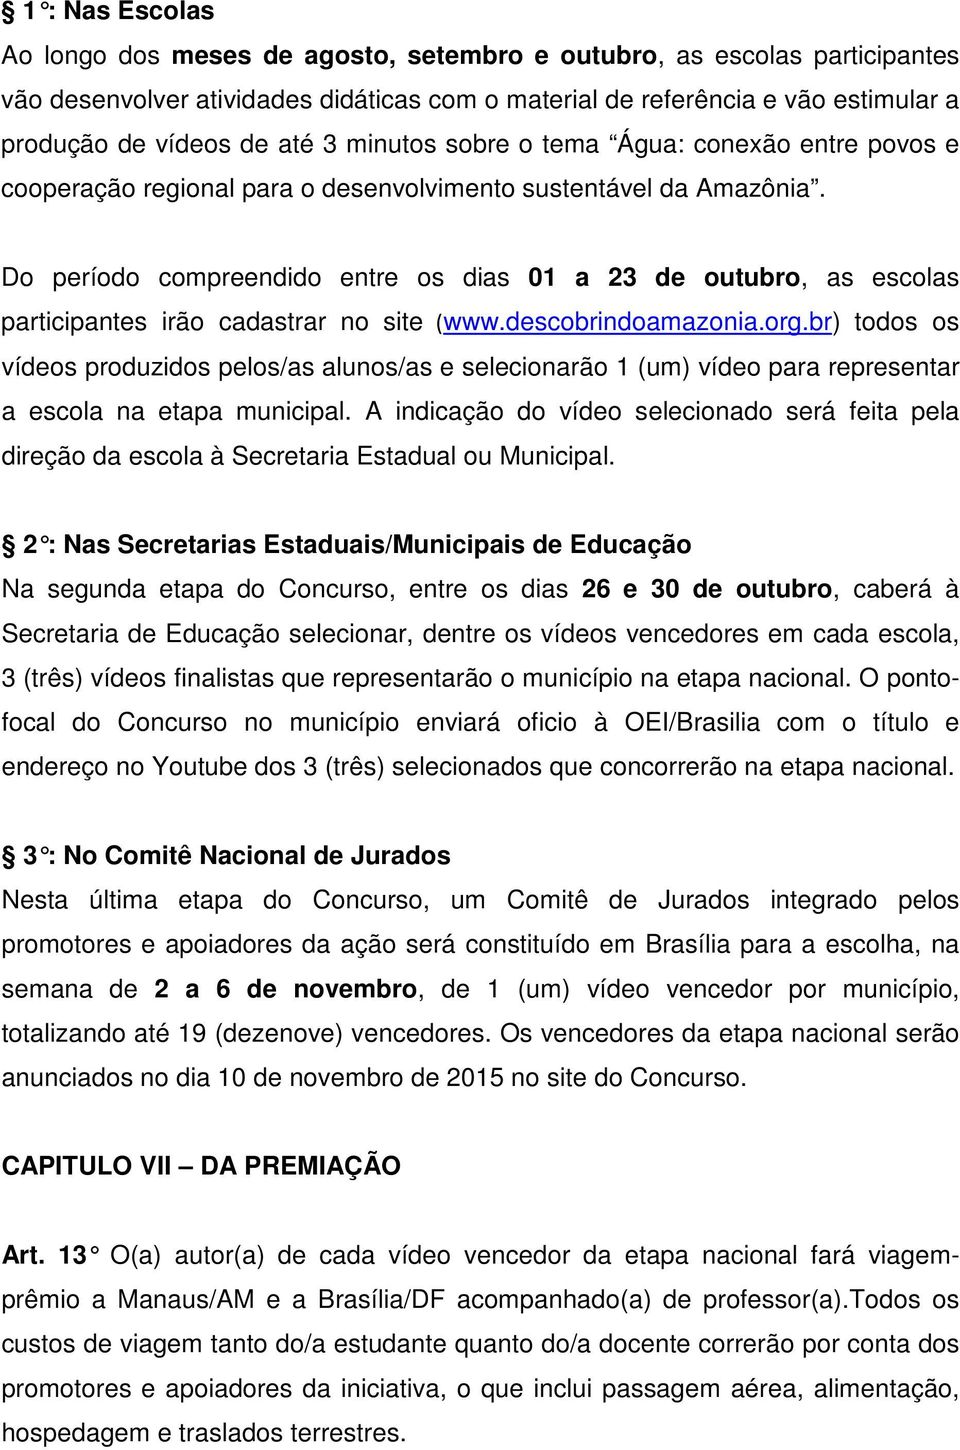 Do período compreendido entre os dias 01 a 23 de outubro, as escolas participantes irão cadastrar no site (www.descobrindoamazonia.org.